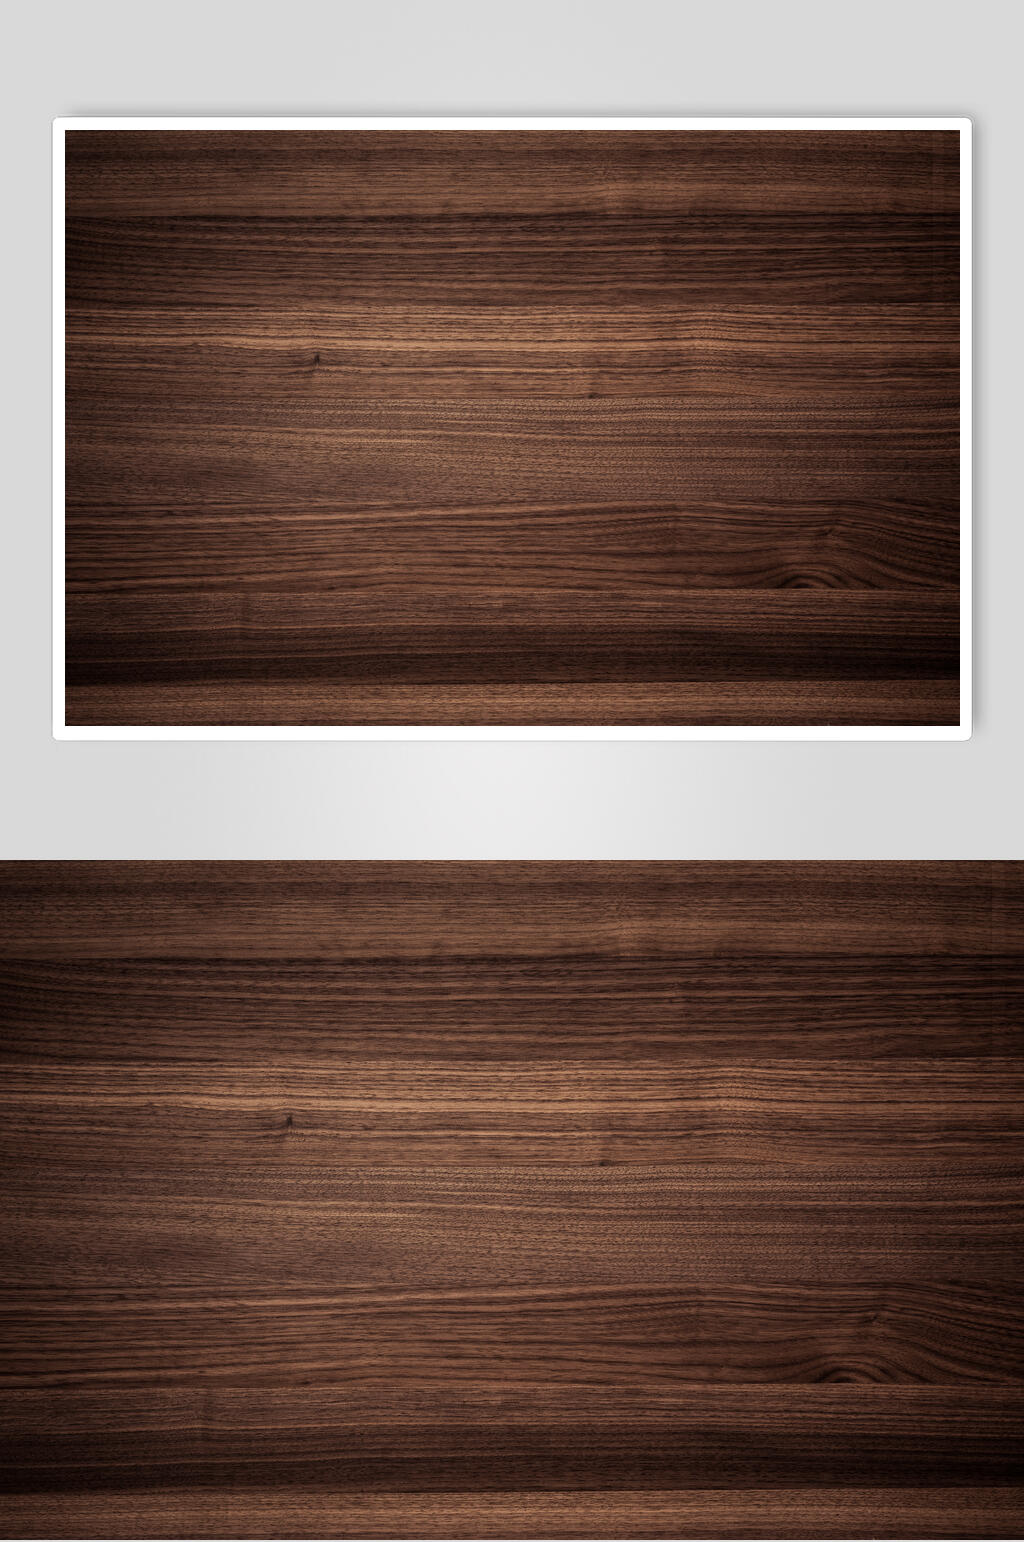 棕色木纹木质材质贴图素材高清图片立即下载木质感材质背景贴图高清